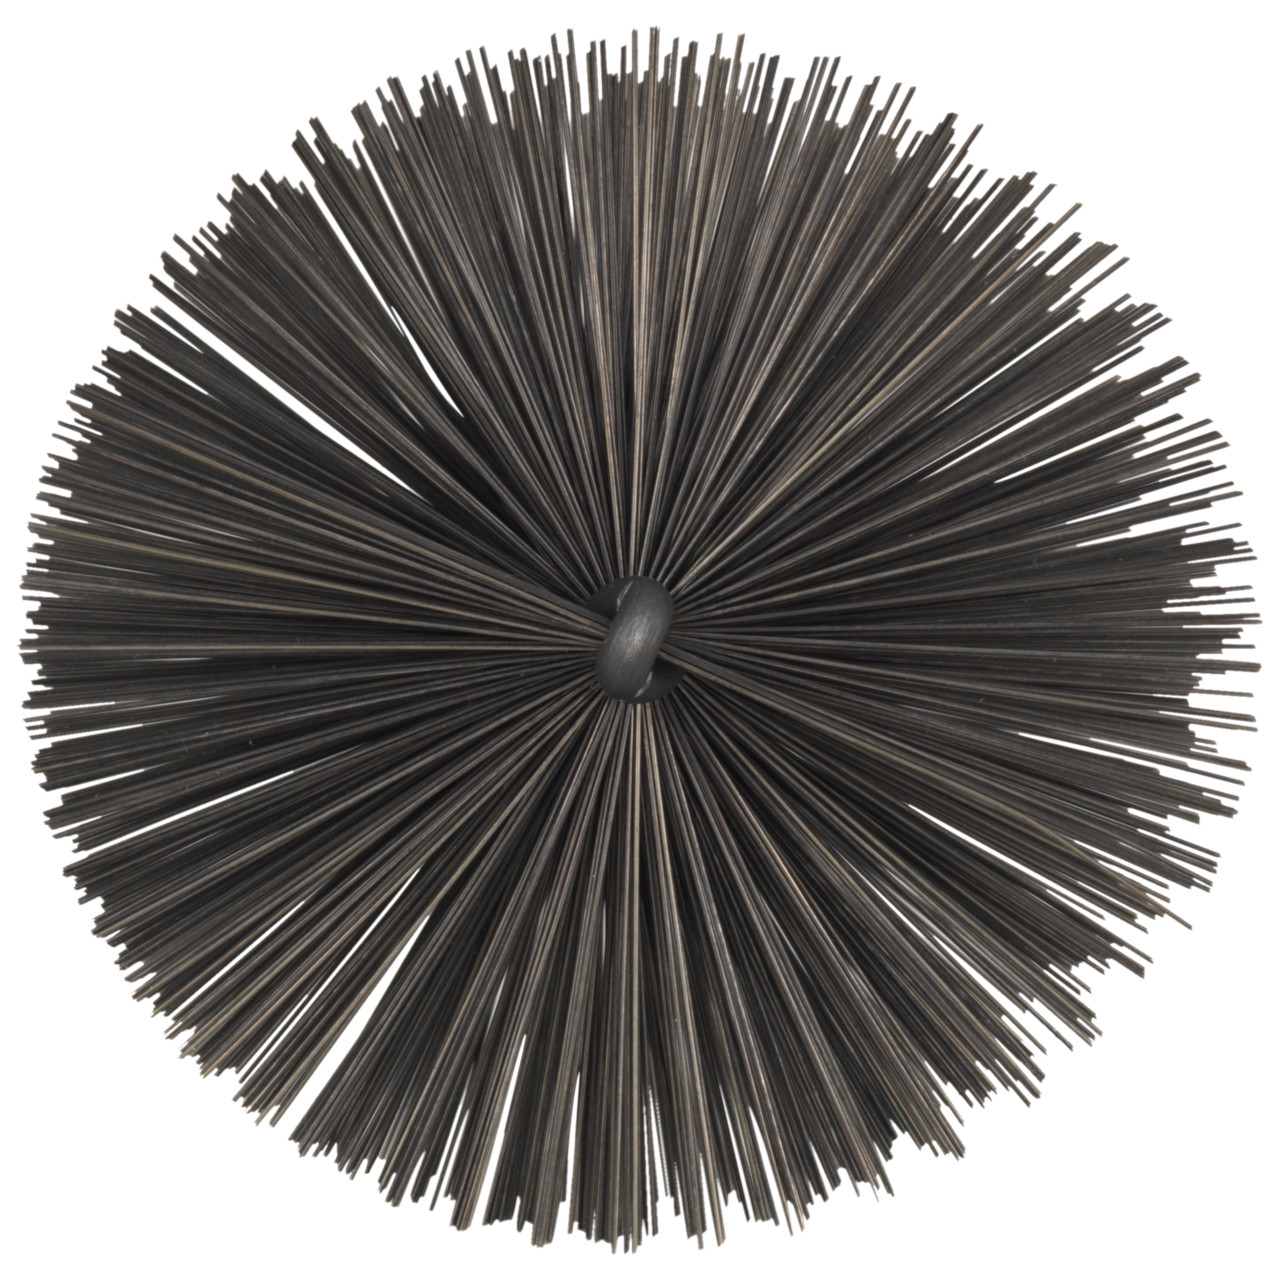 Tyrolit Brosse tubulaire avec filetage extérieur DxGE-I 50xW1/2-160 Pour l'acier, forme : 18ROGDG - (brosse tubulaire), art. 34203605